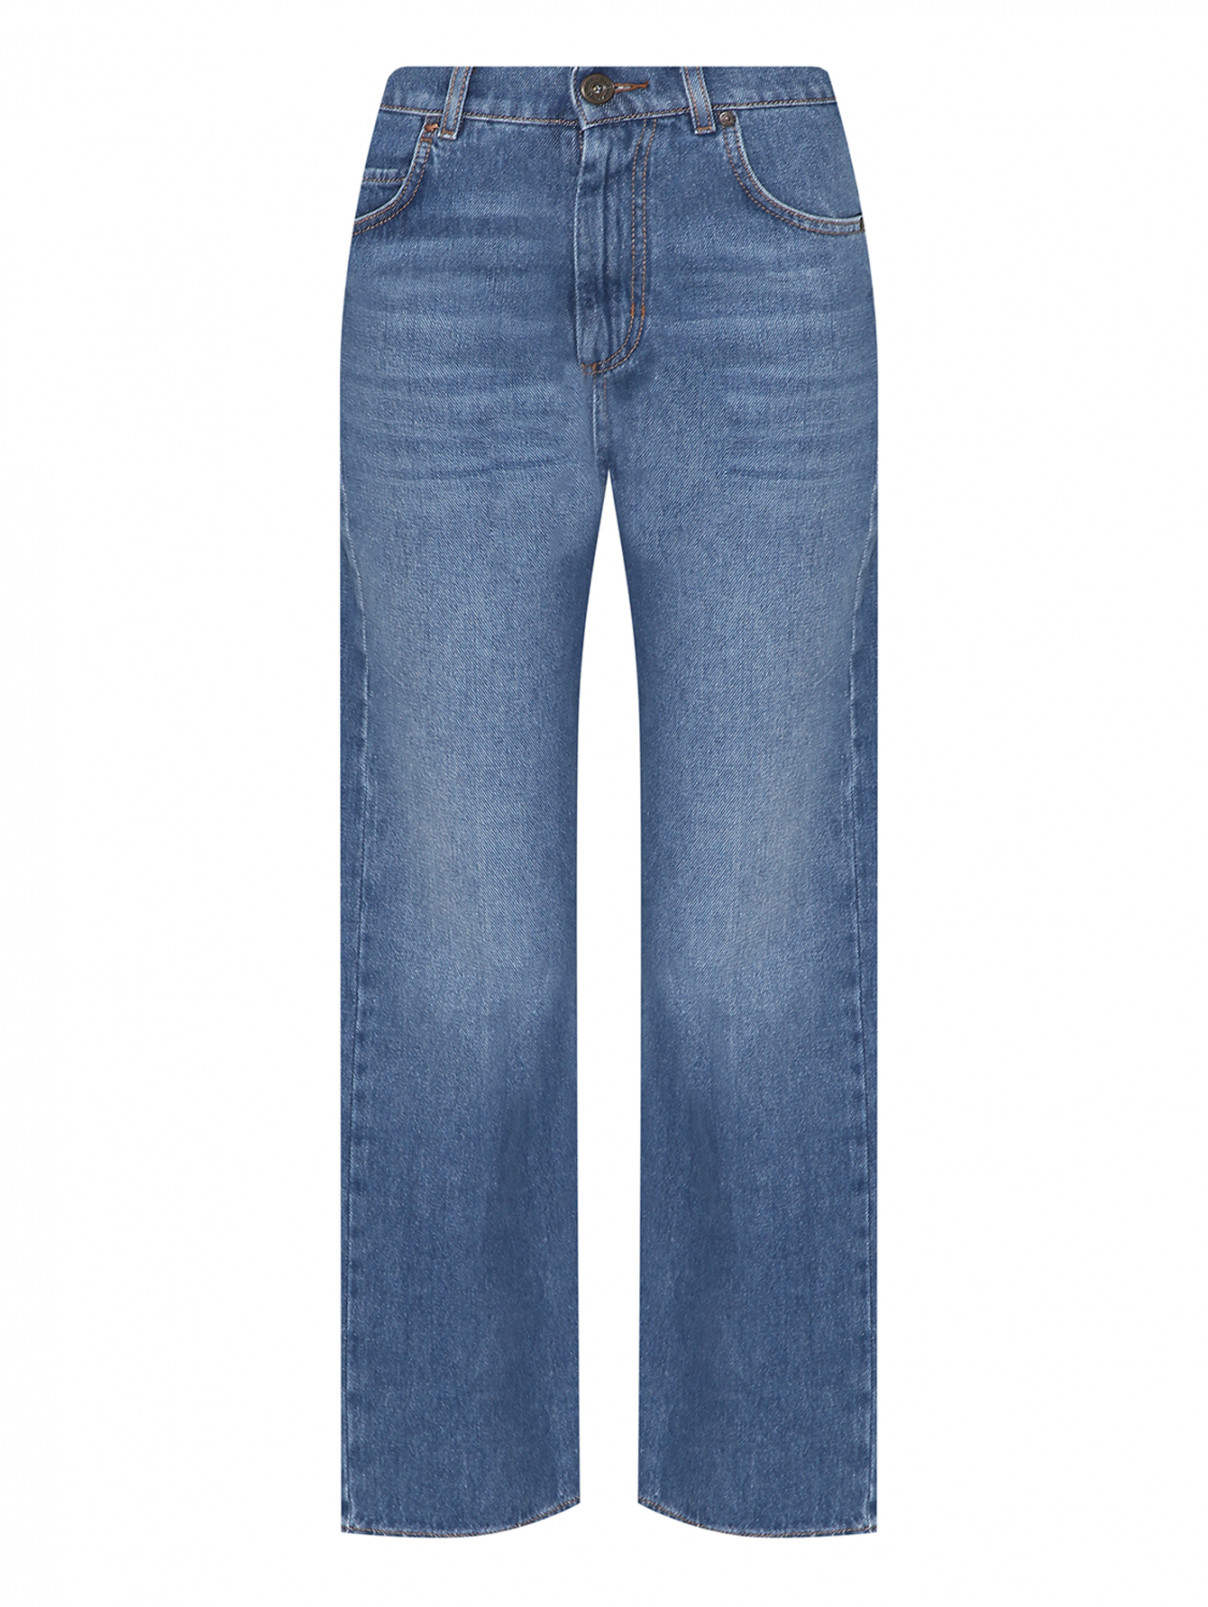 Широкие джинсы с высокой посадкой Weekend Max Mara  –  Общий вид  – Цвет:  Синий